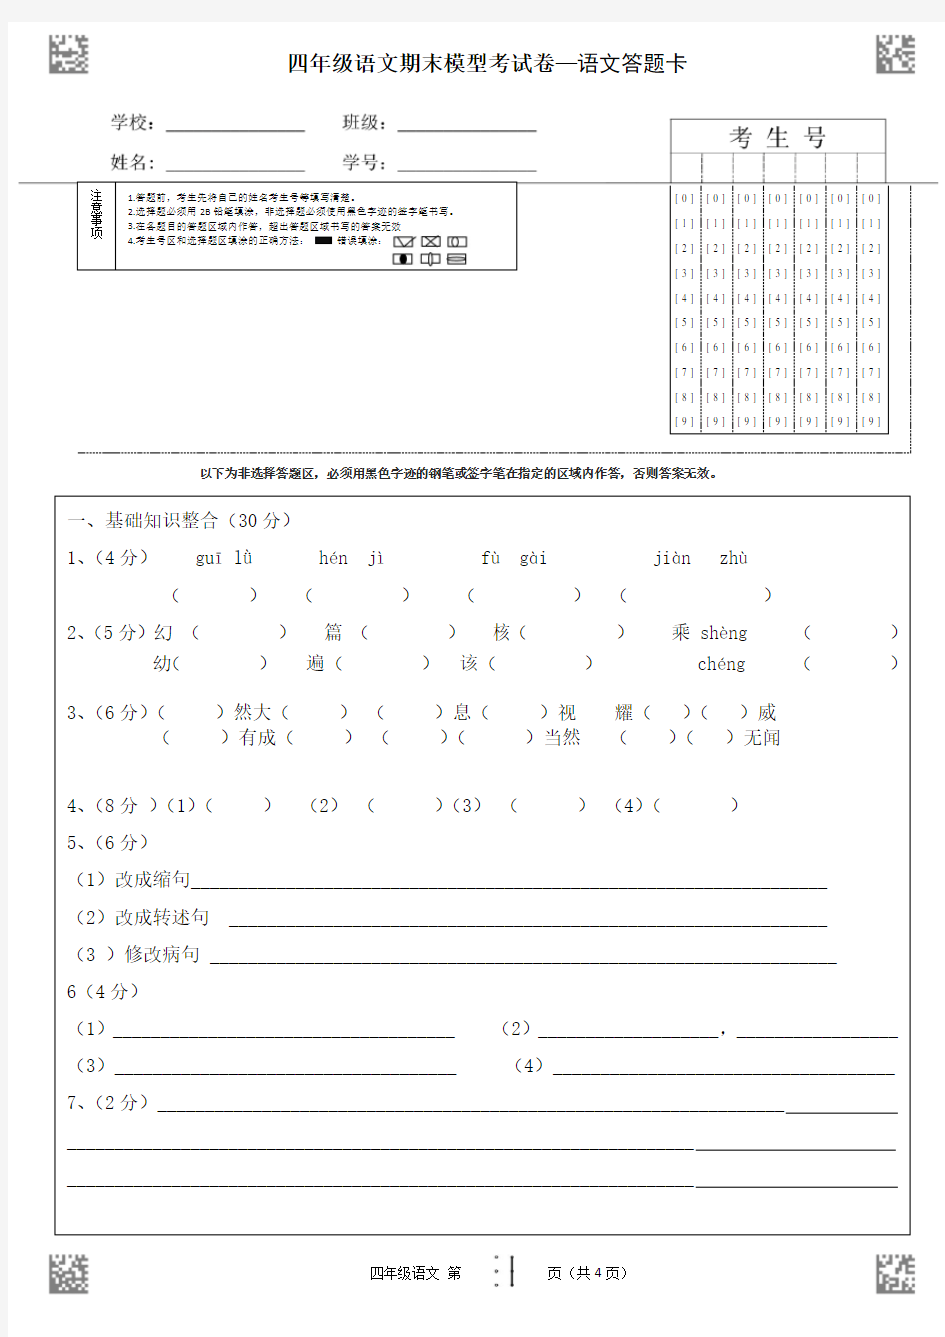 四年级语文期末考试卷答题卡模板 (4页)